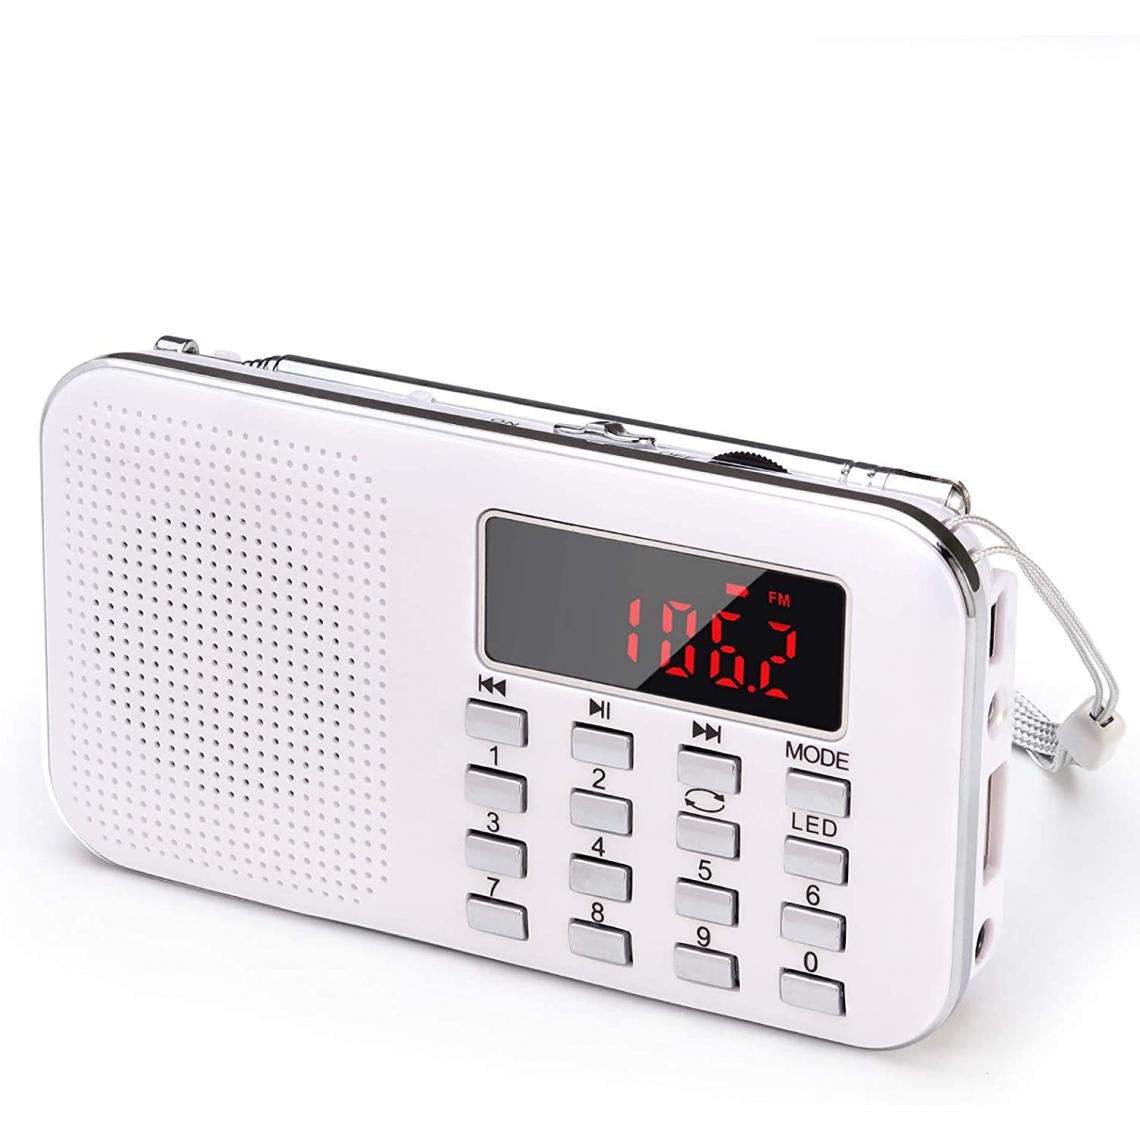 Prunus - radio portable AM / FM / SD / AUX / USB avec batterie rechargeable de 1200 mAh blanc gris - Radio